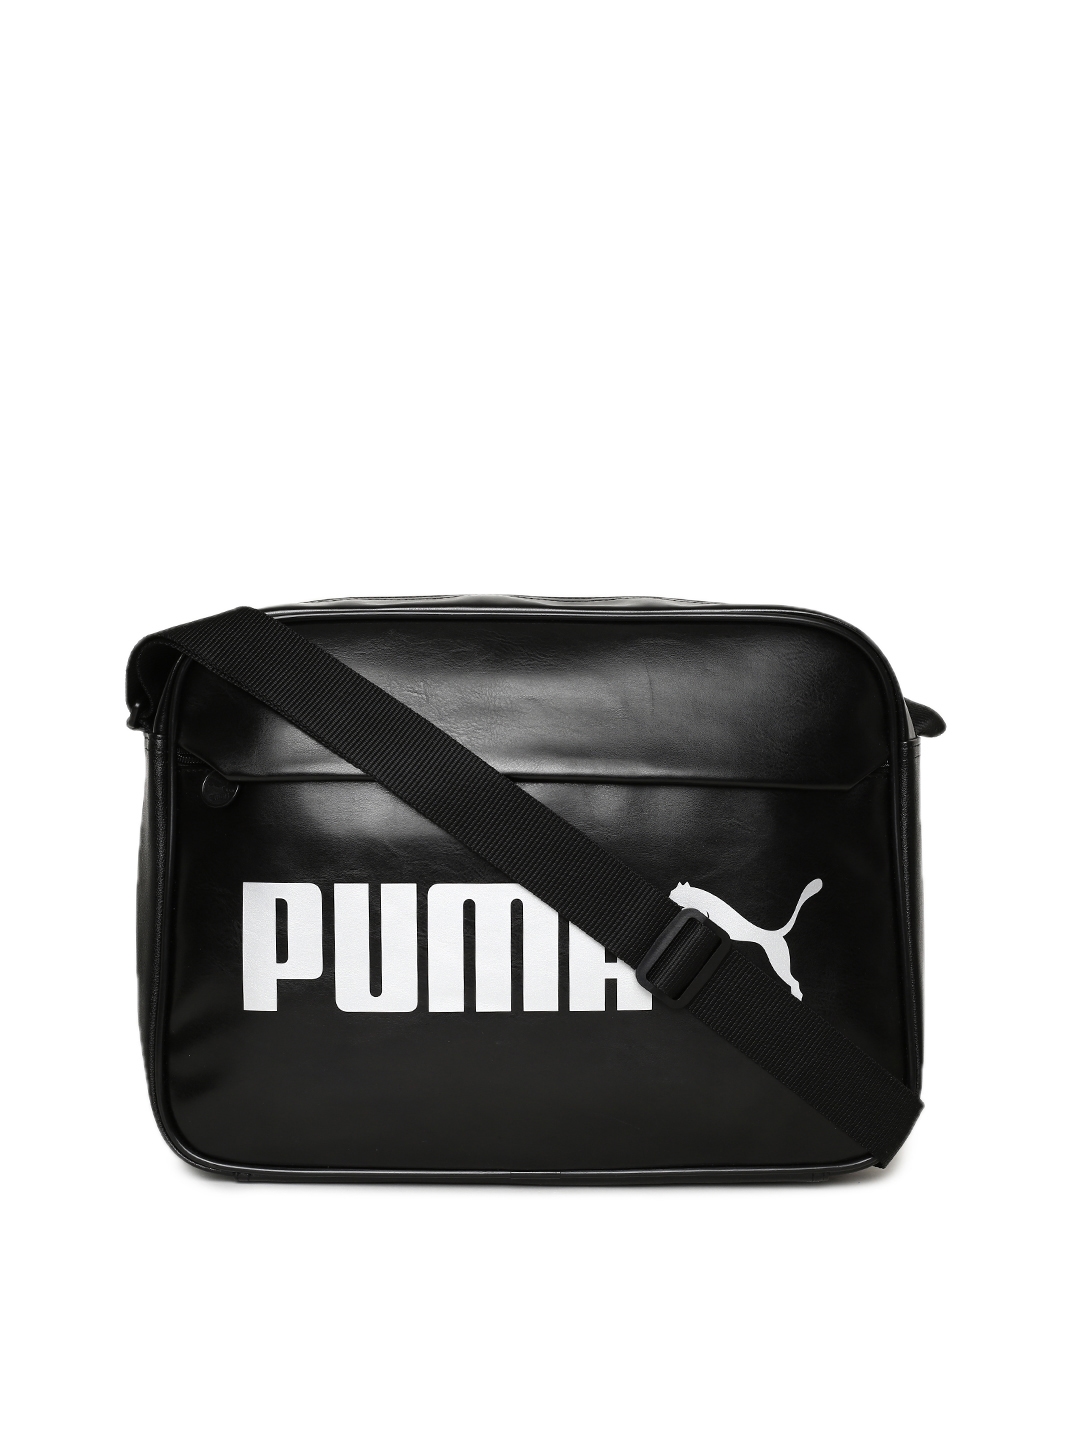 PUMA UnisexAdult Sling Bag Black  Amazonin Fashion